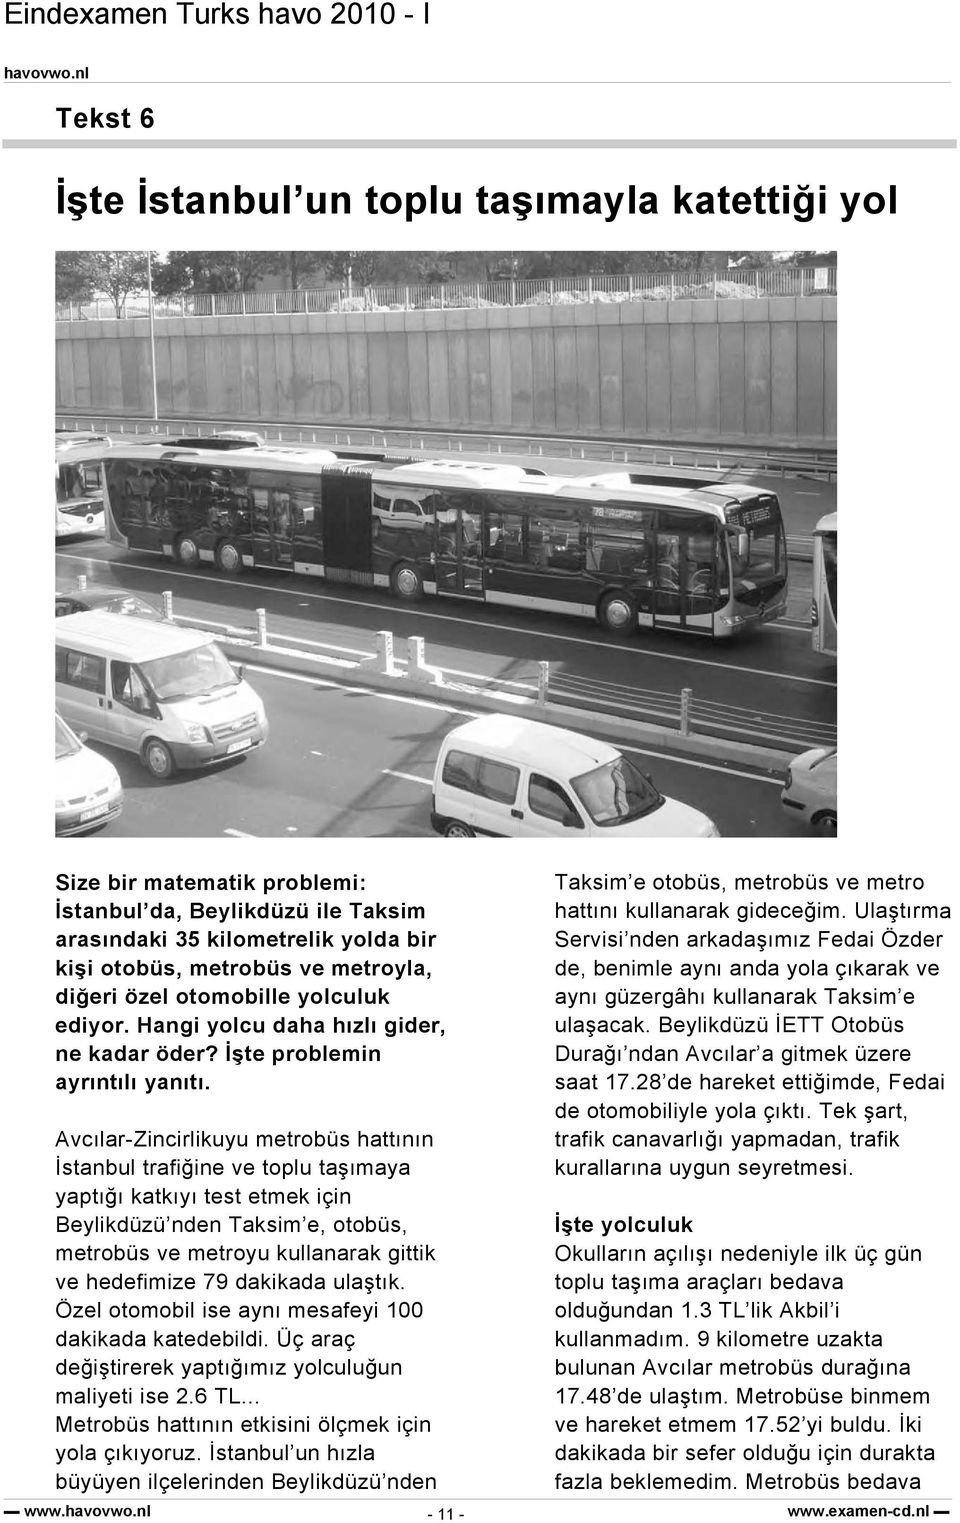 Avcılar-Zincirlikuyu metrobüs hattının İstanbul trafiğine ve toplu taşımaya yaptığı katkıyı test etmek için Beylikdüzü nden Taksim e, otobüs, metrobüs ve metroyu kullanarak gittik ve hedefimize 79